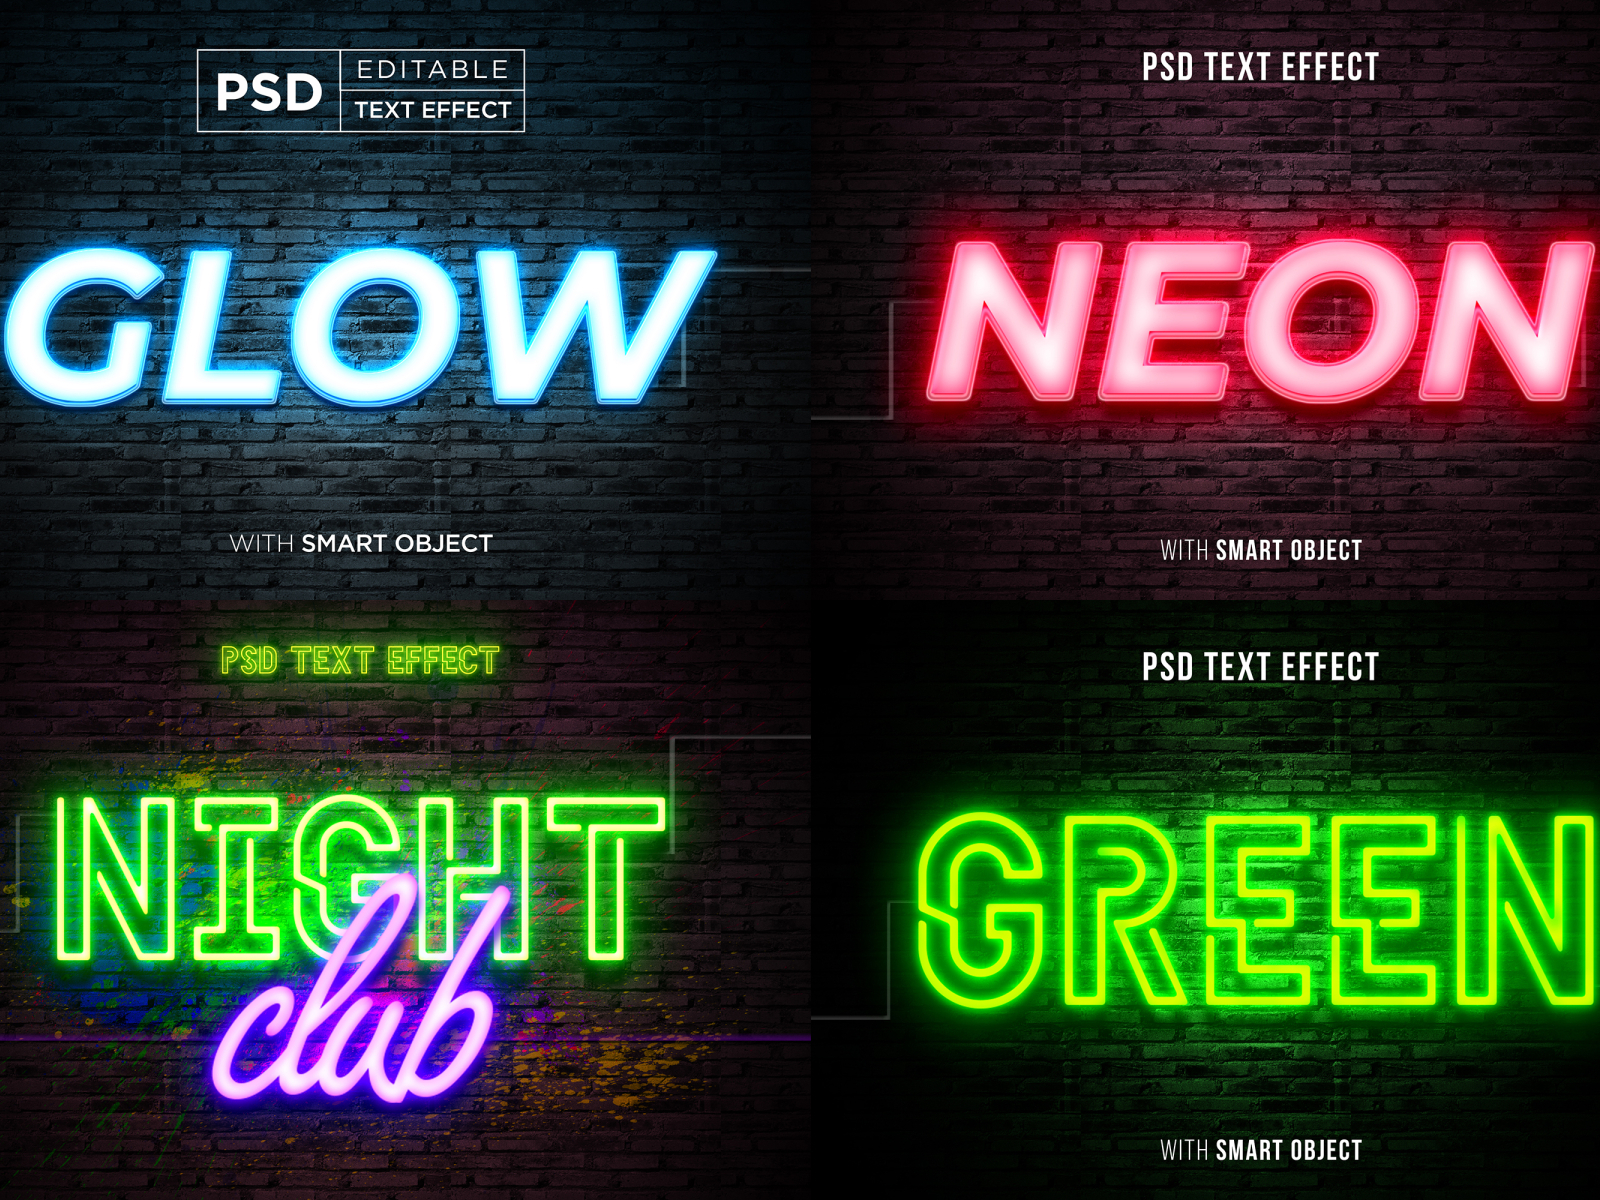 glow neon text effect mockup template bundle by Slamet rifaudin on Dribbble